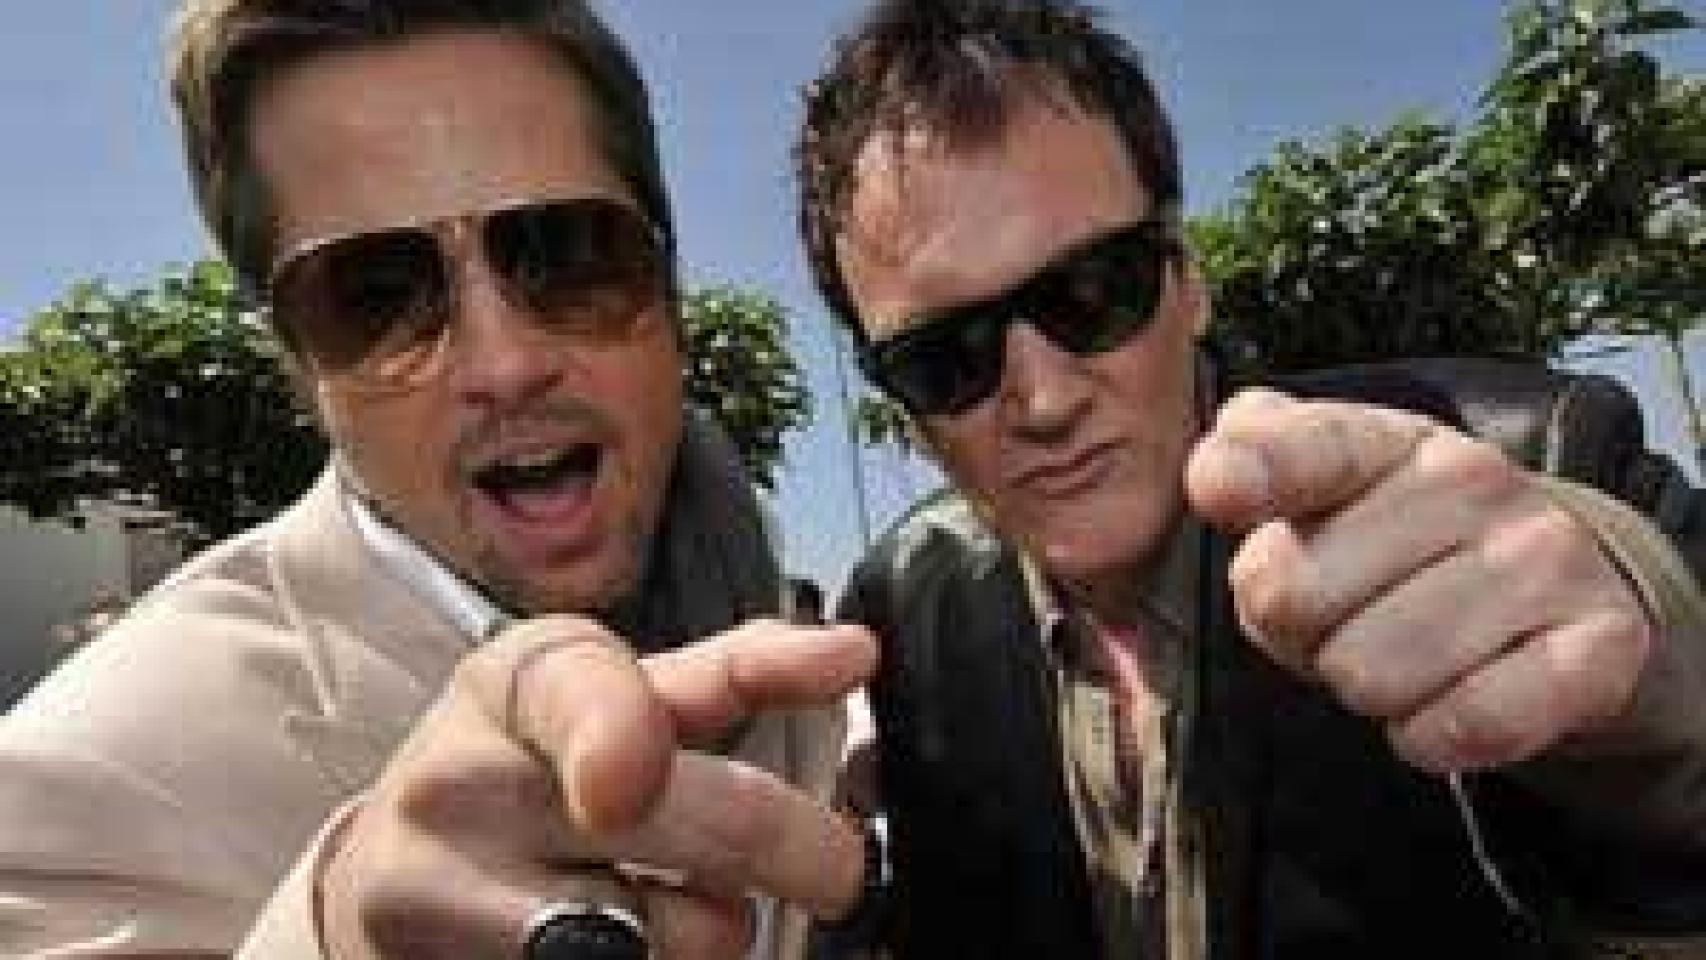 Image: Quentin Tarantino y Brad Pitt, invitados estrellas en San Sebastián